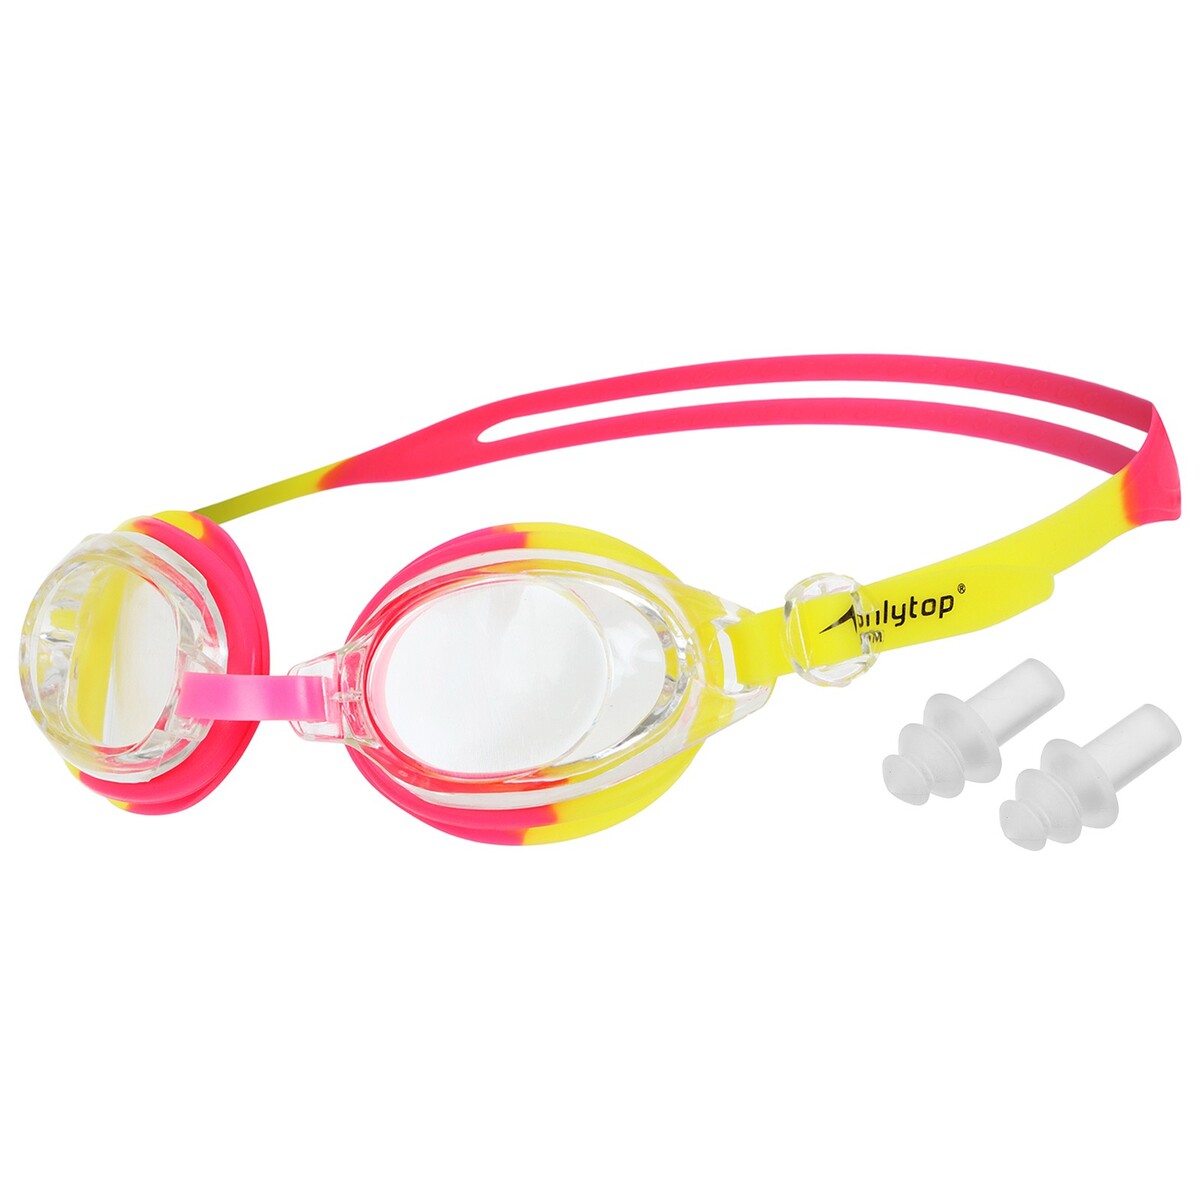 Очки для плавания детские onlytop, беруши, цвет красный/желтый очки для плавания детские onlytop беруши цвет красный желтый